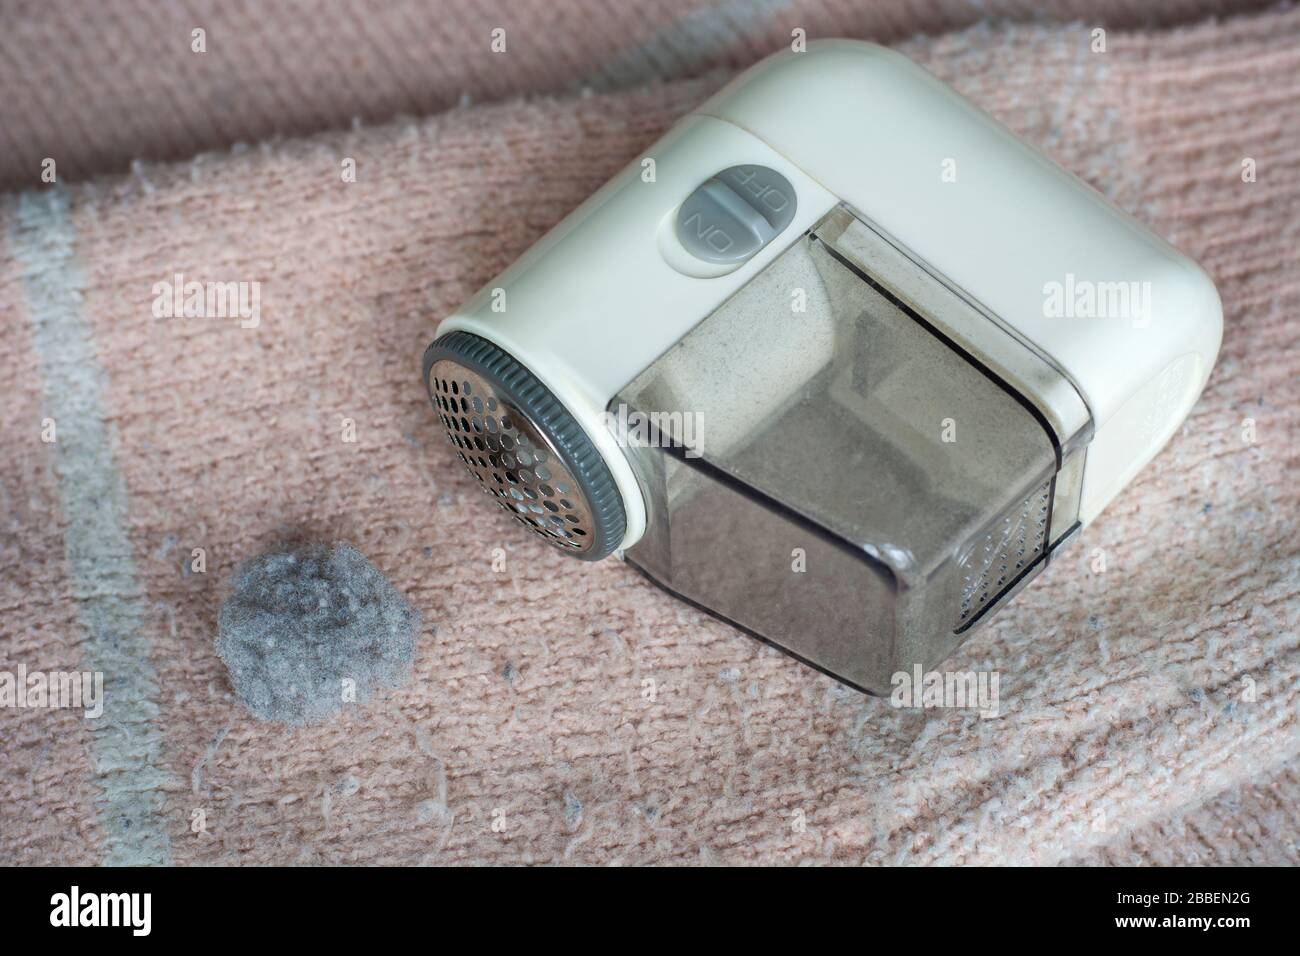 Maglione pillato. Dispositivo per la rimozione del fuzz del rasoio elettrico portatile per la rimozione di residui, pelucchi e pillole sui vestiti. Foto Stock